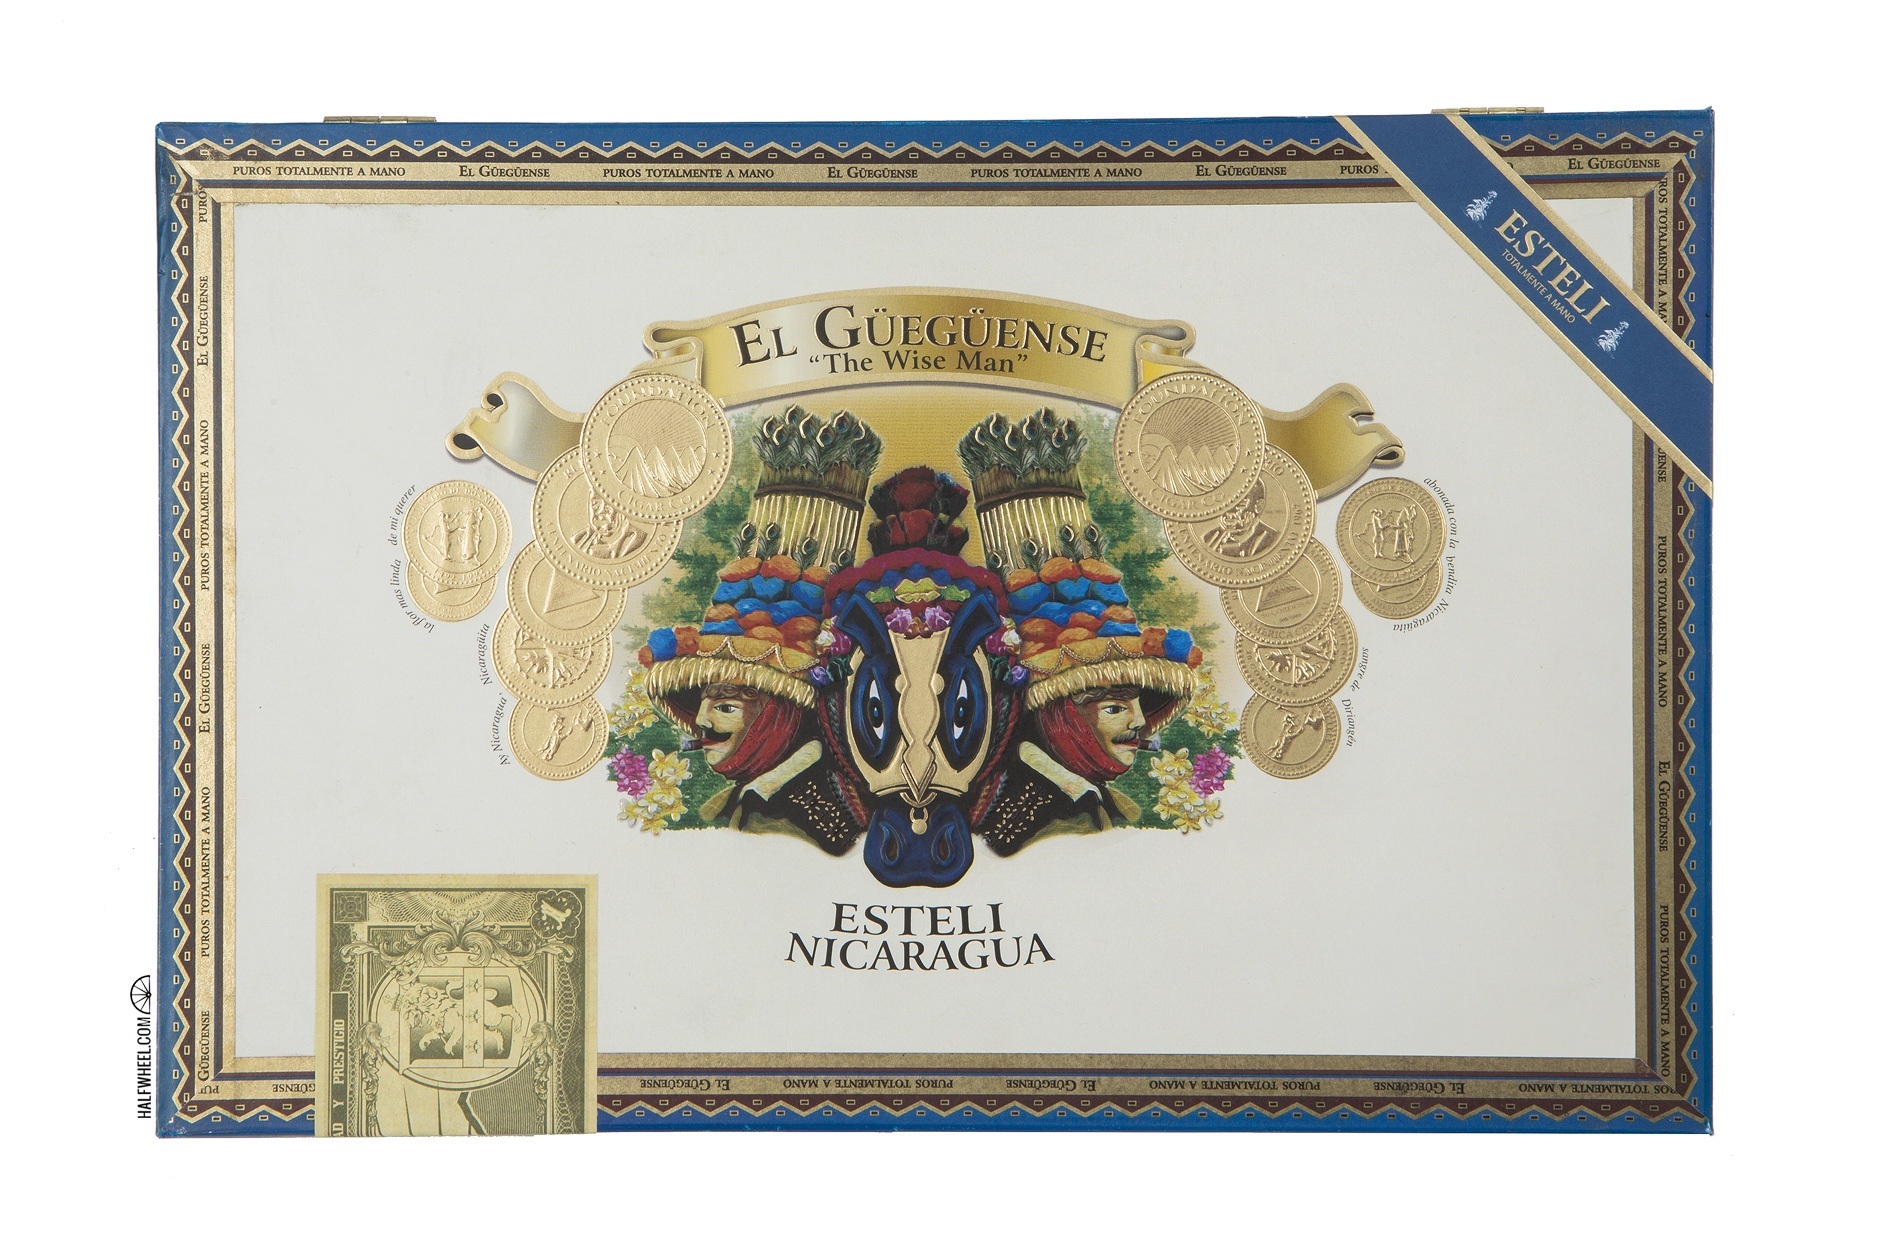 El Gueguense Corona Gorda Box 1